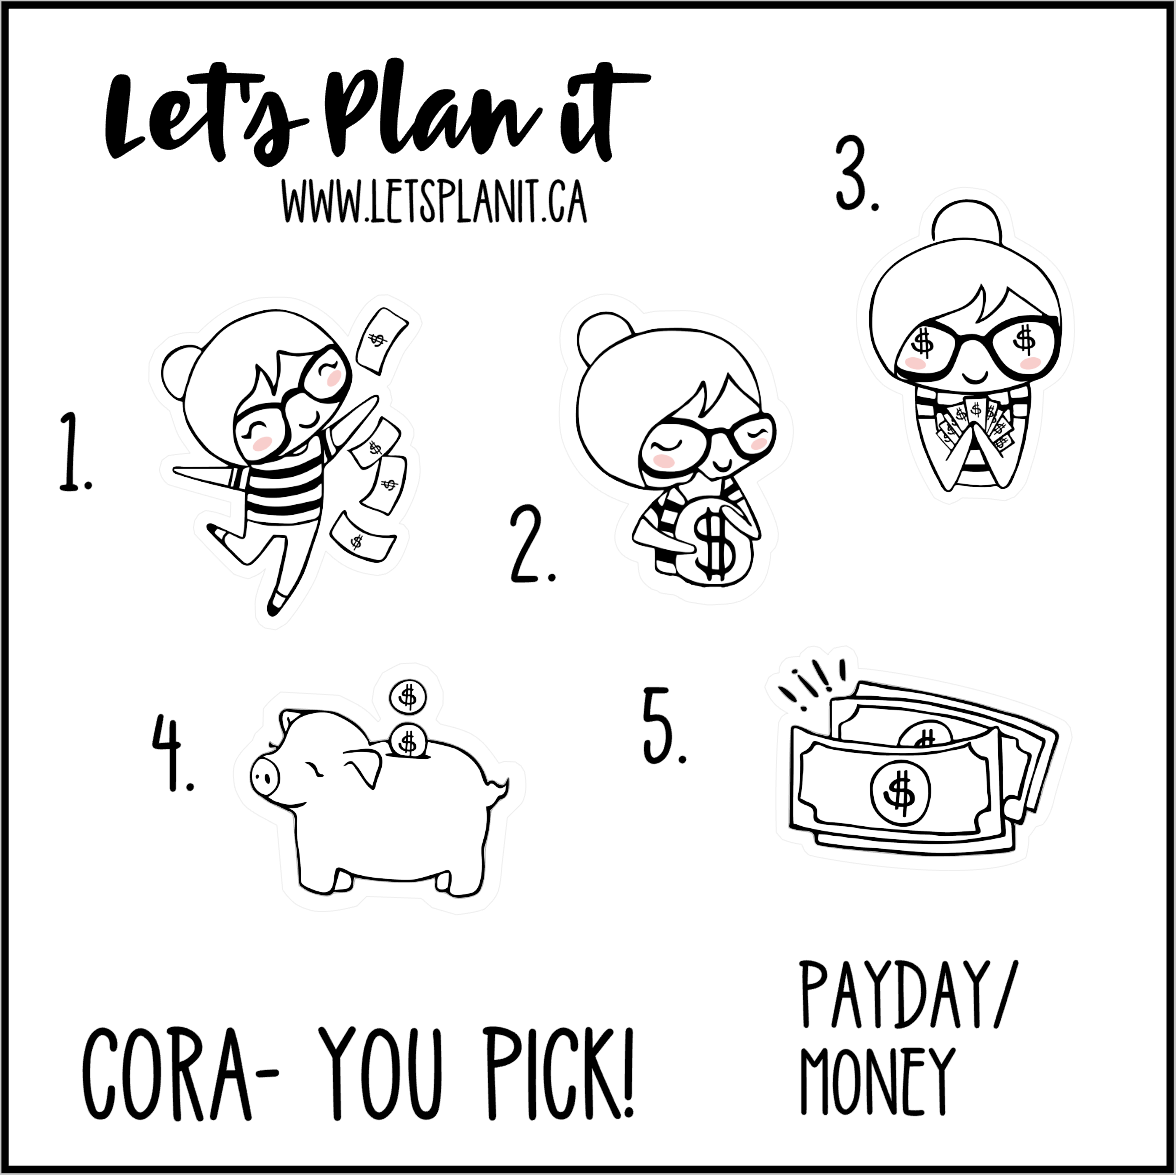 Cora-u-pick- Payday